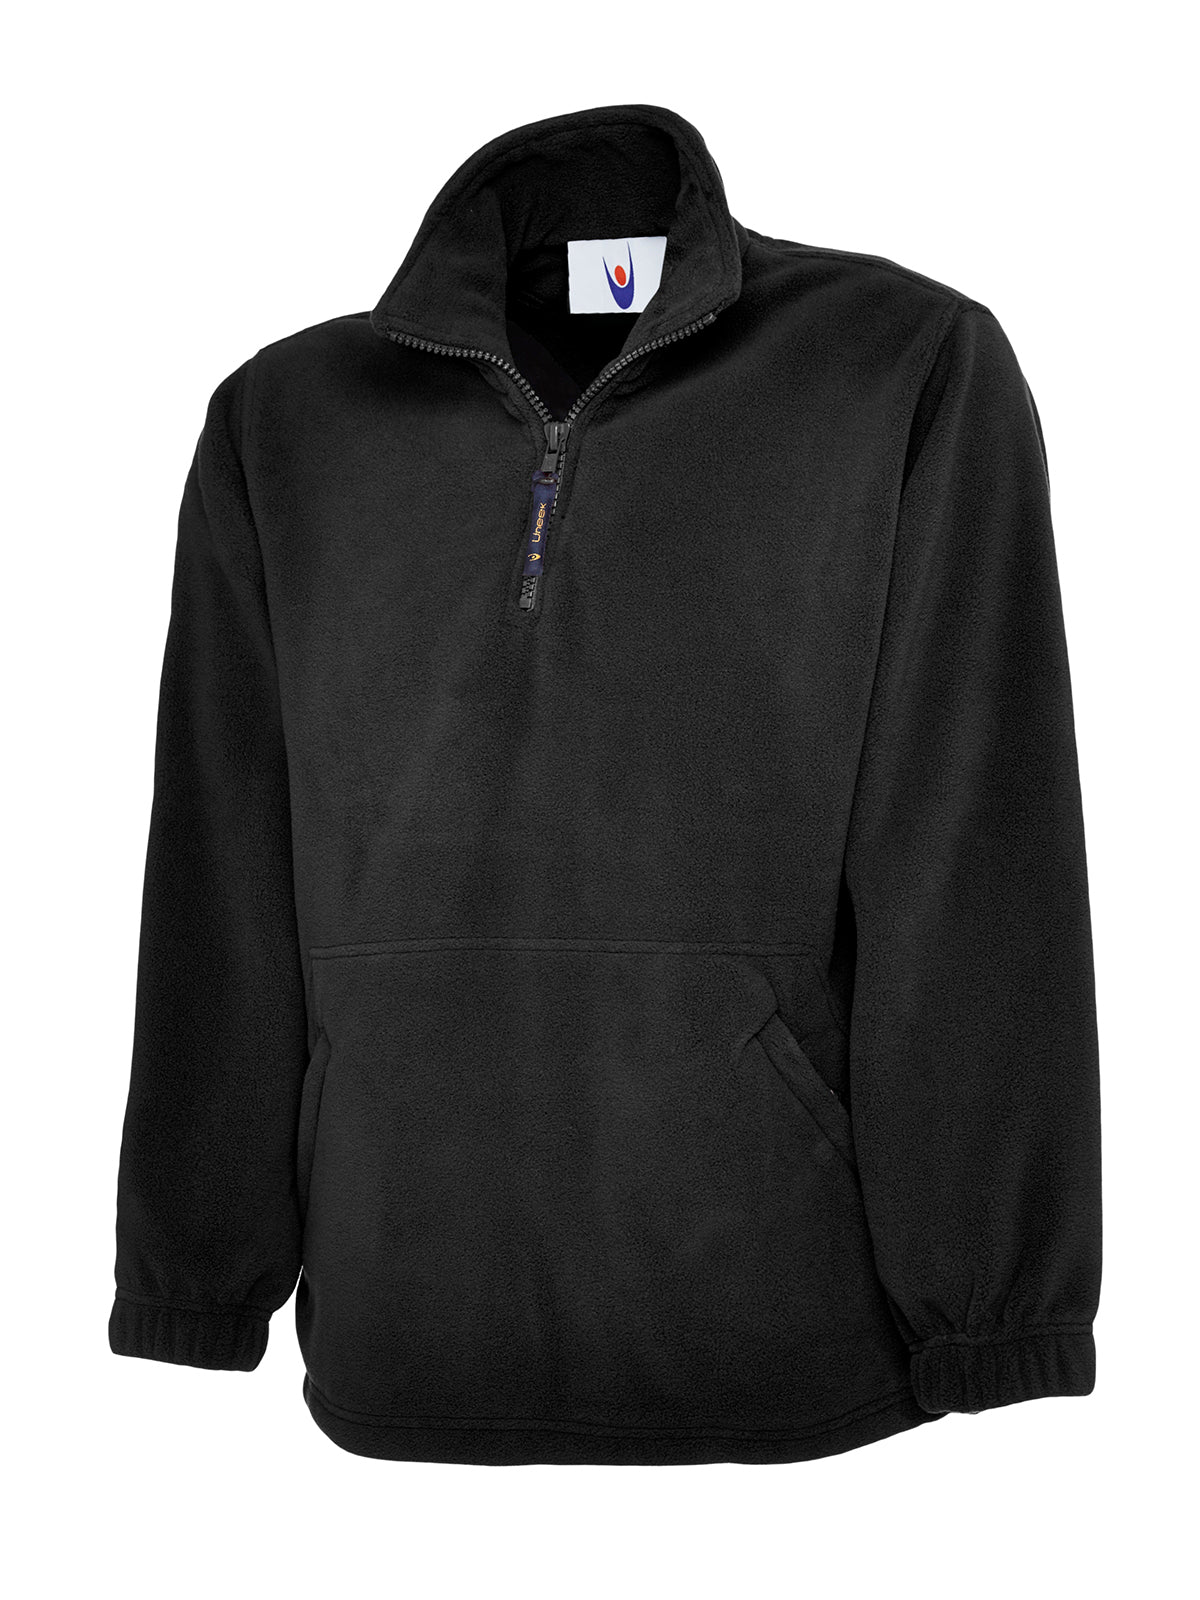 Uneek Childrens Full Zip Micro Fleece Jacket UC603 - Black